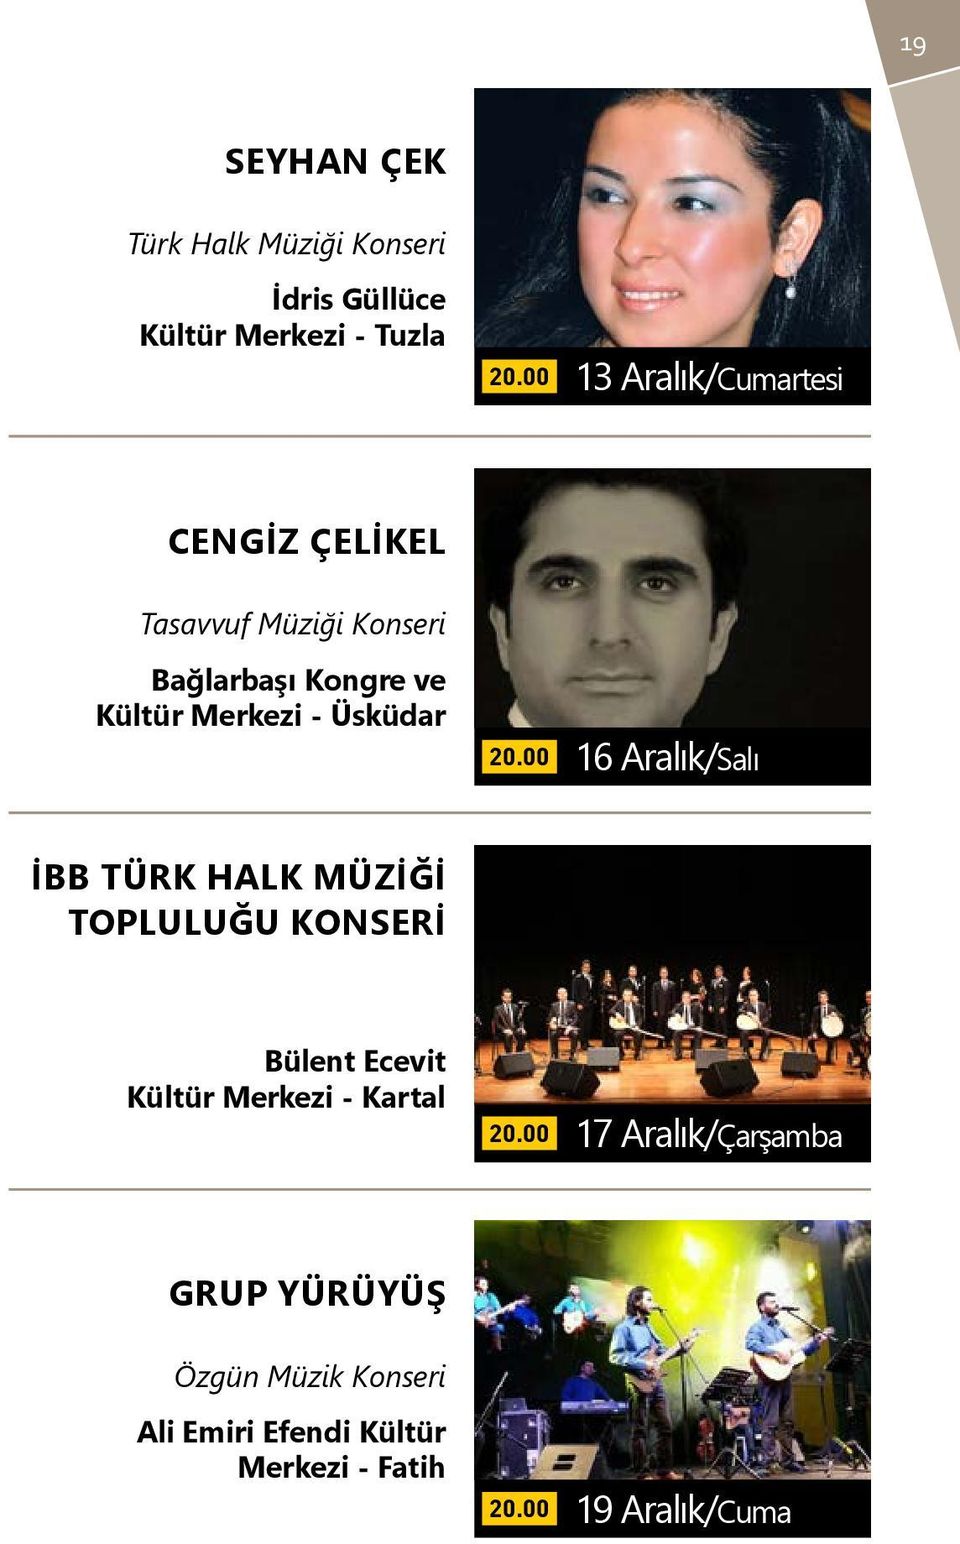 Üsküdar 16 Aralık/Salı İBB Türk Halk Müziği Topluluğu Konseri Bülent Ecevit Kültür Merkezi -